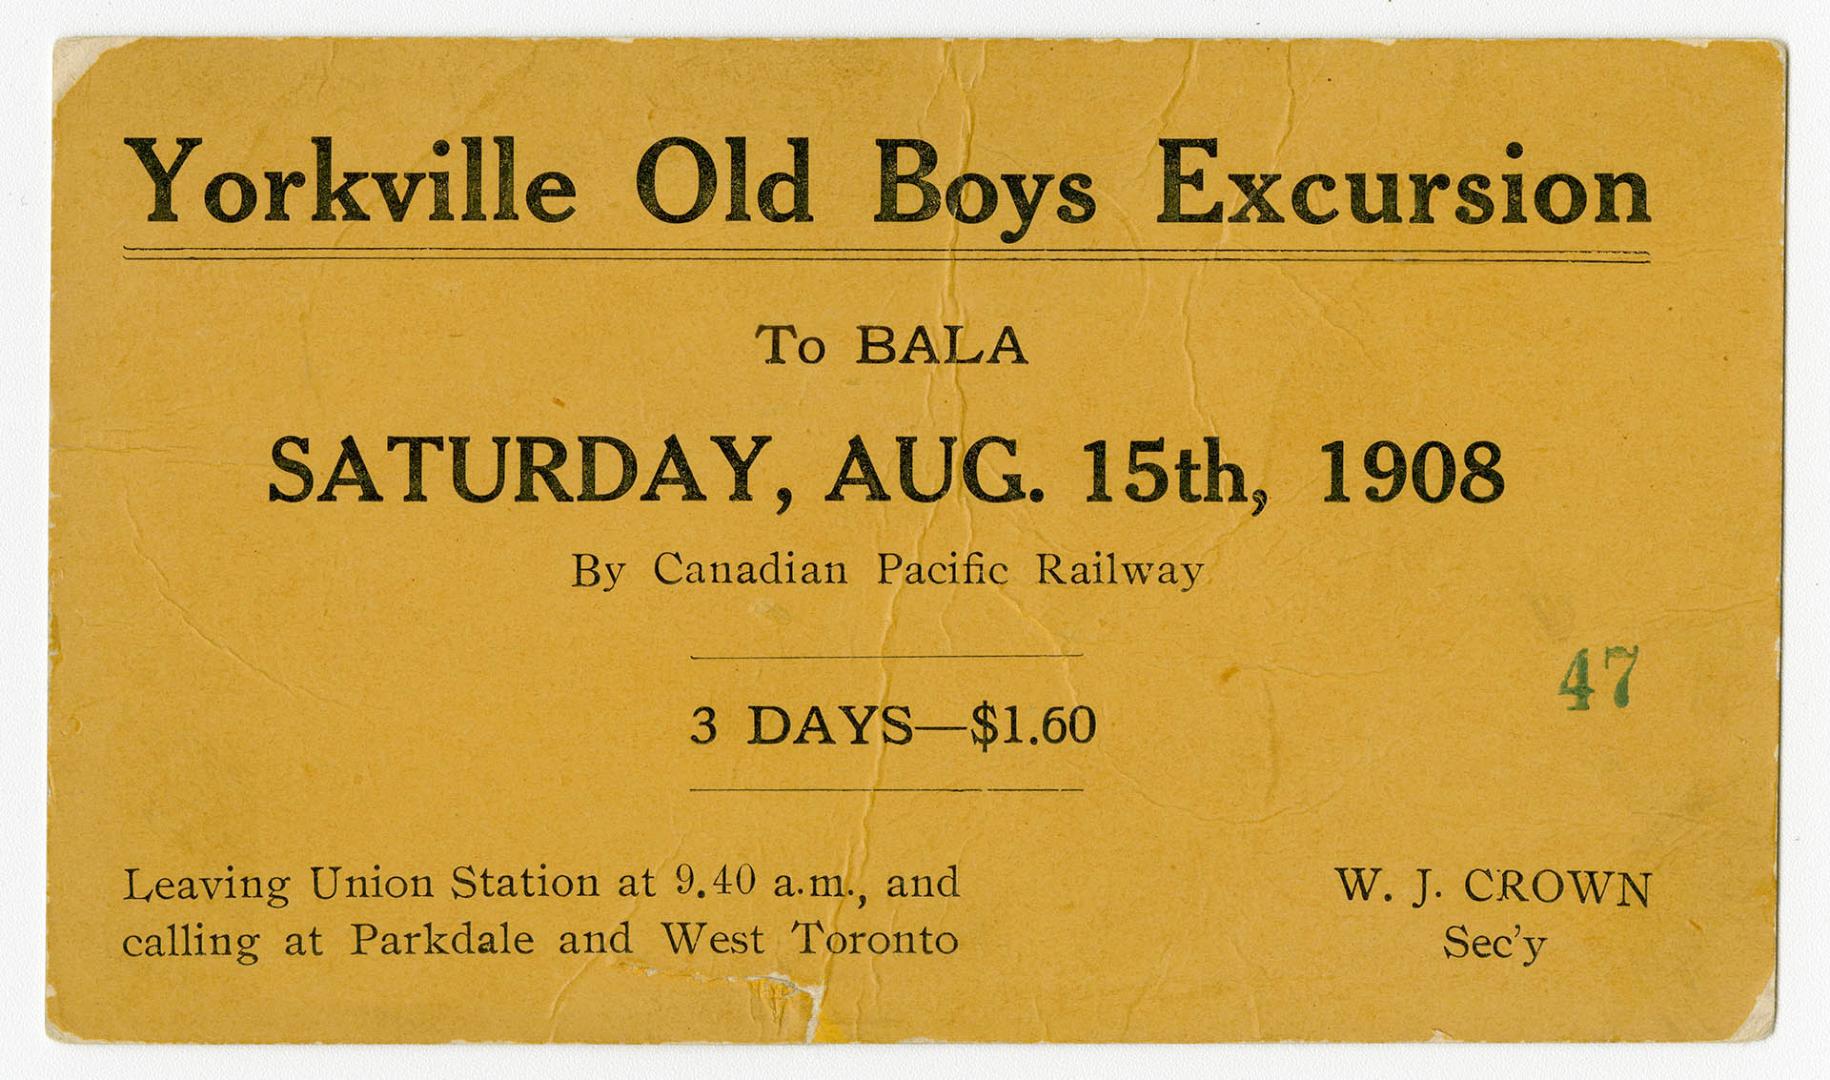 Yorkville Old Boys excursion to Bala, Saturday, Aug